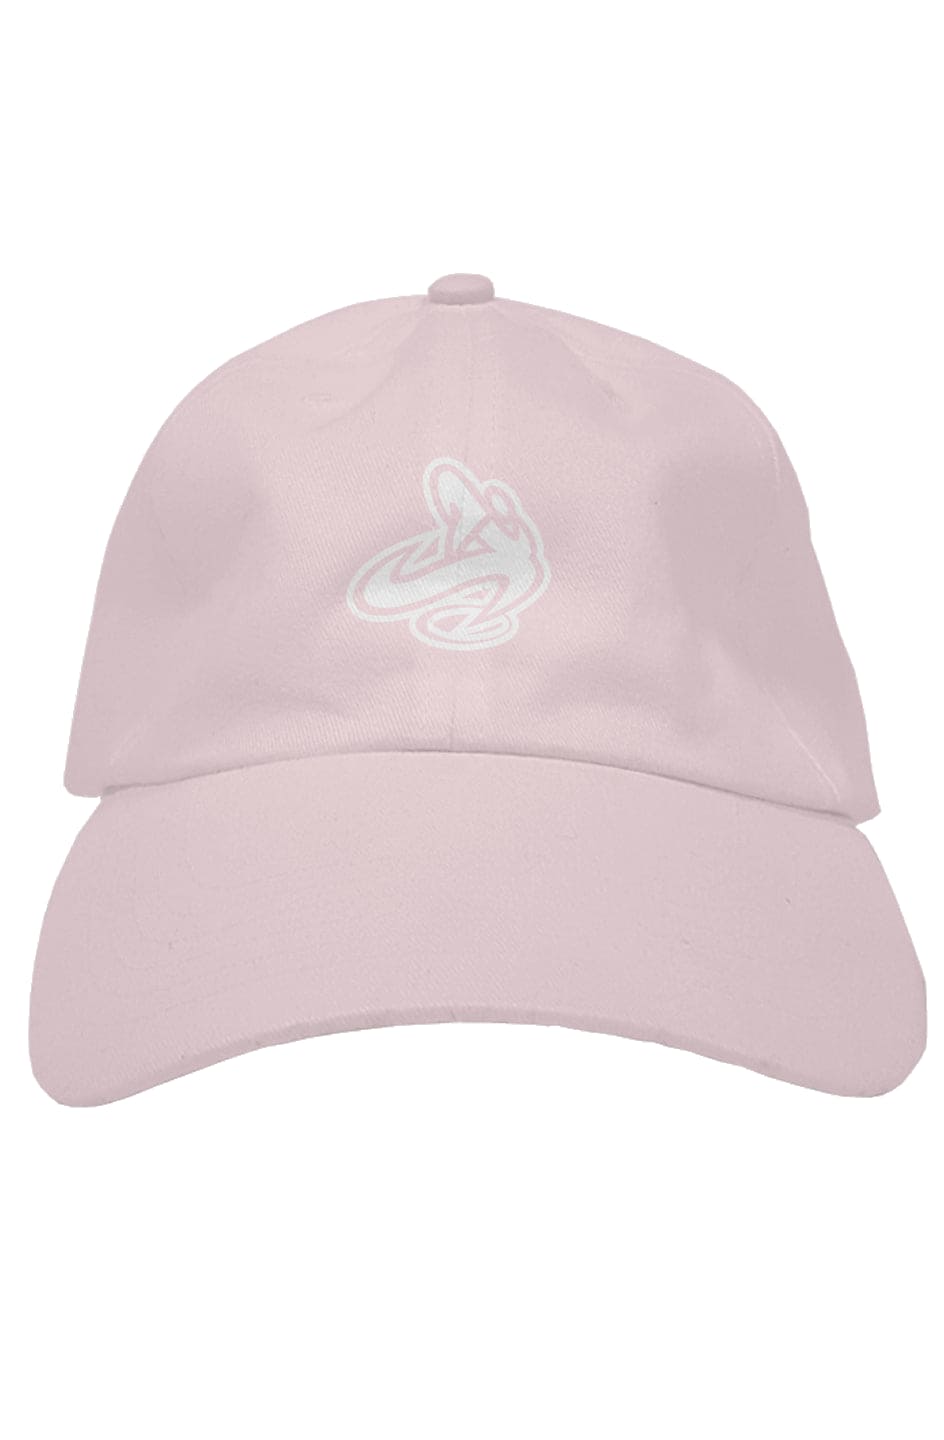 Athletic Apparatus Light Pink premium dad hat